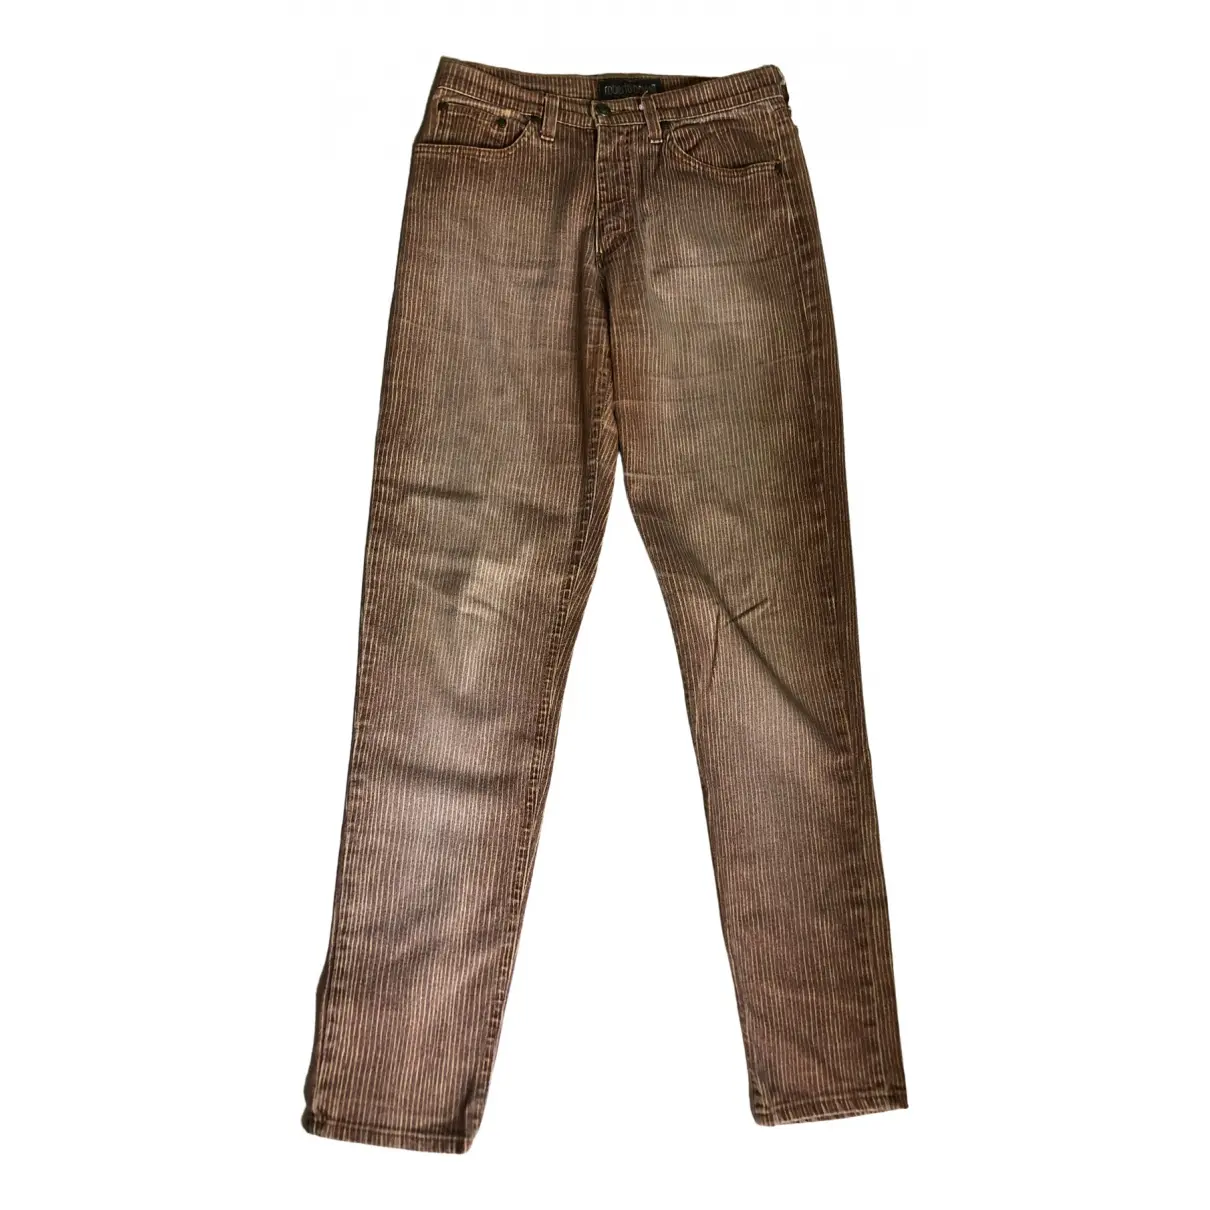 Straight jeans Roberto Cavalli - Vintage